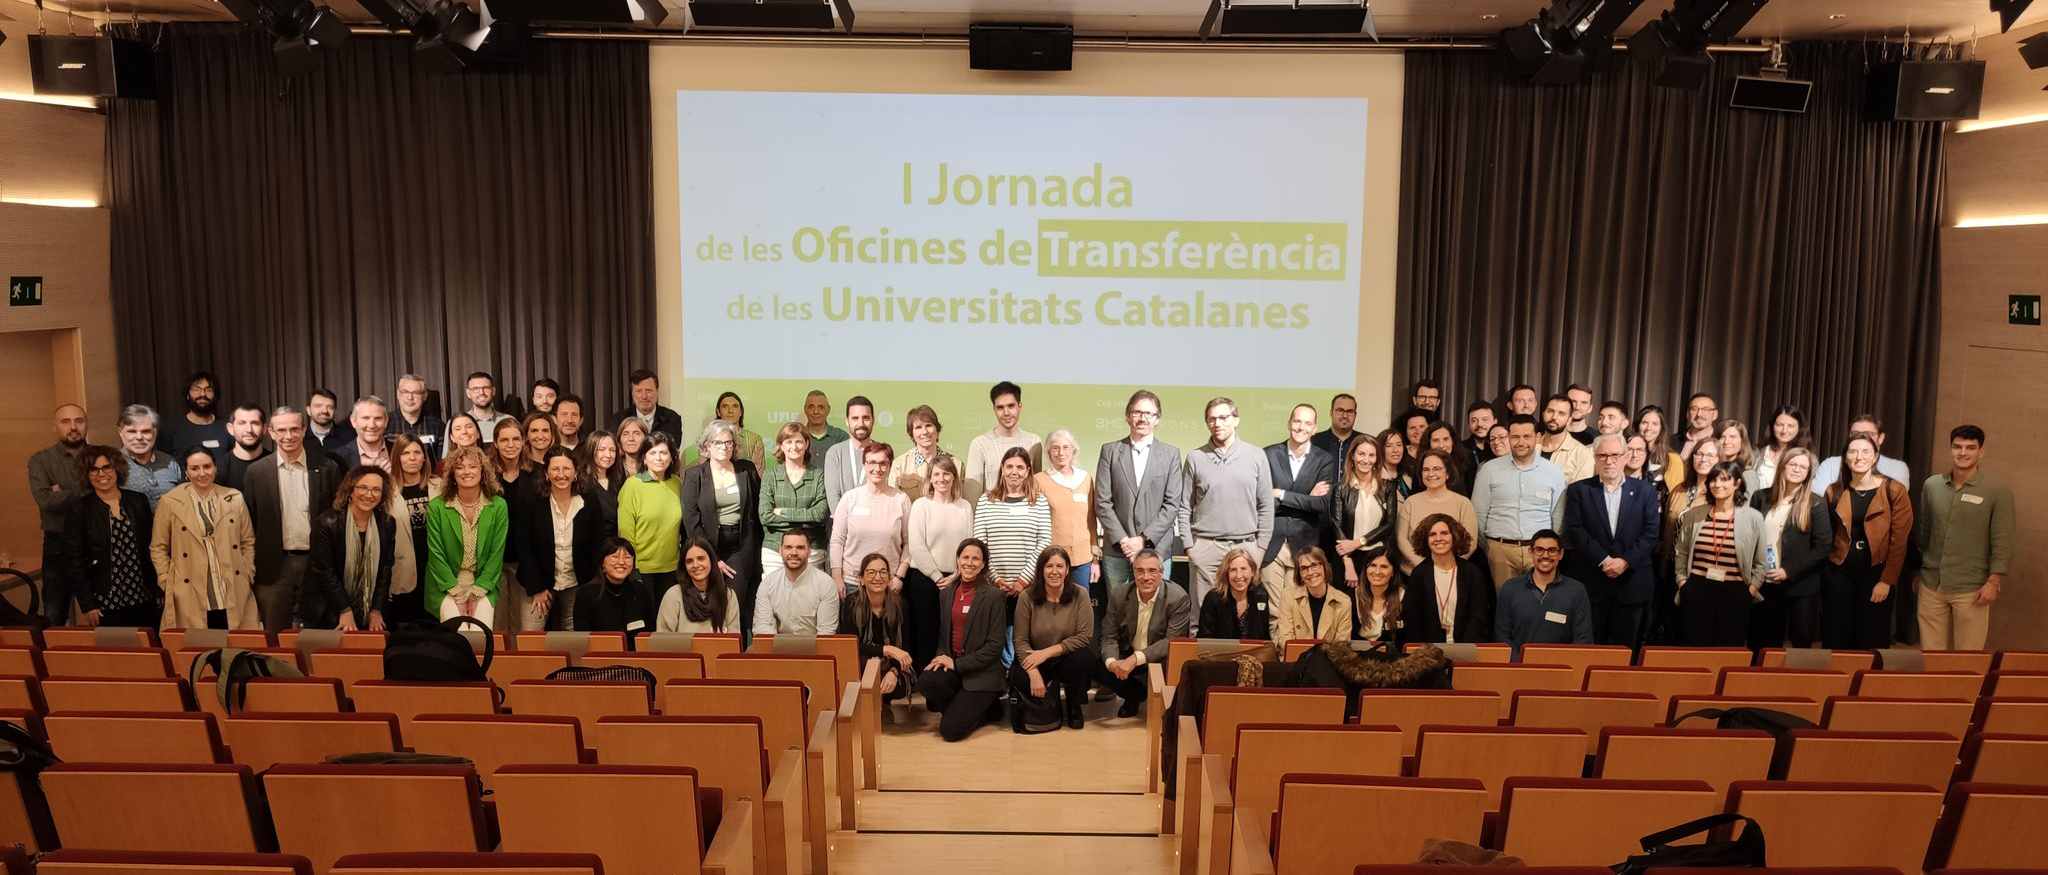 Les universitats catalanes es reuneixen per debatre sobre els reptes de la valorització i transferència de coneixement